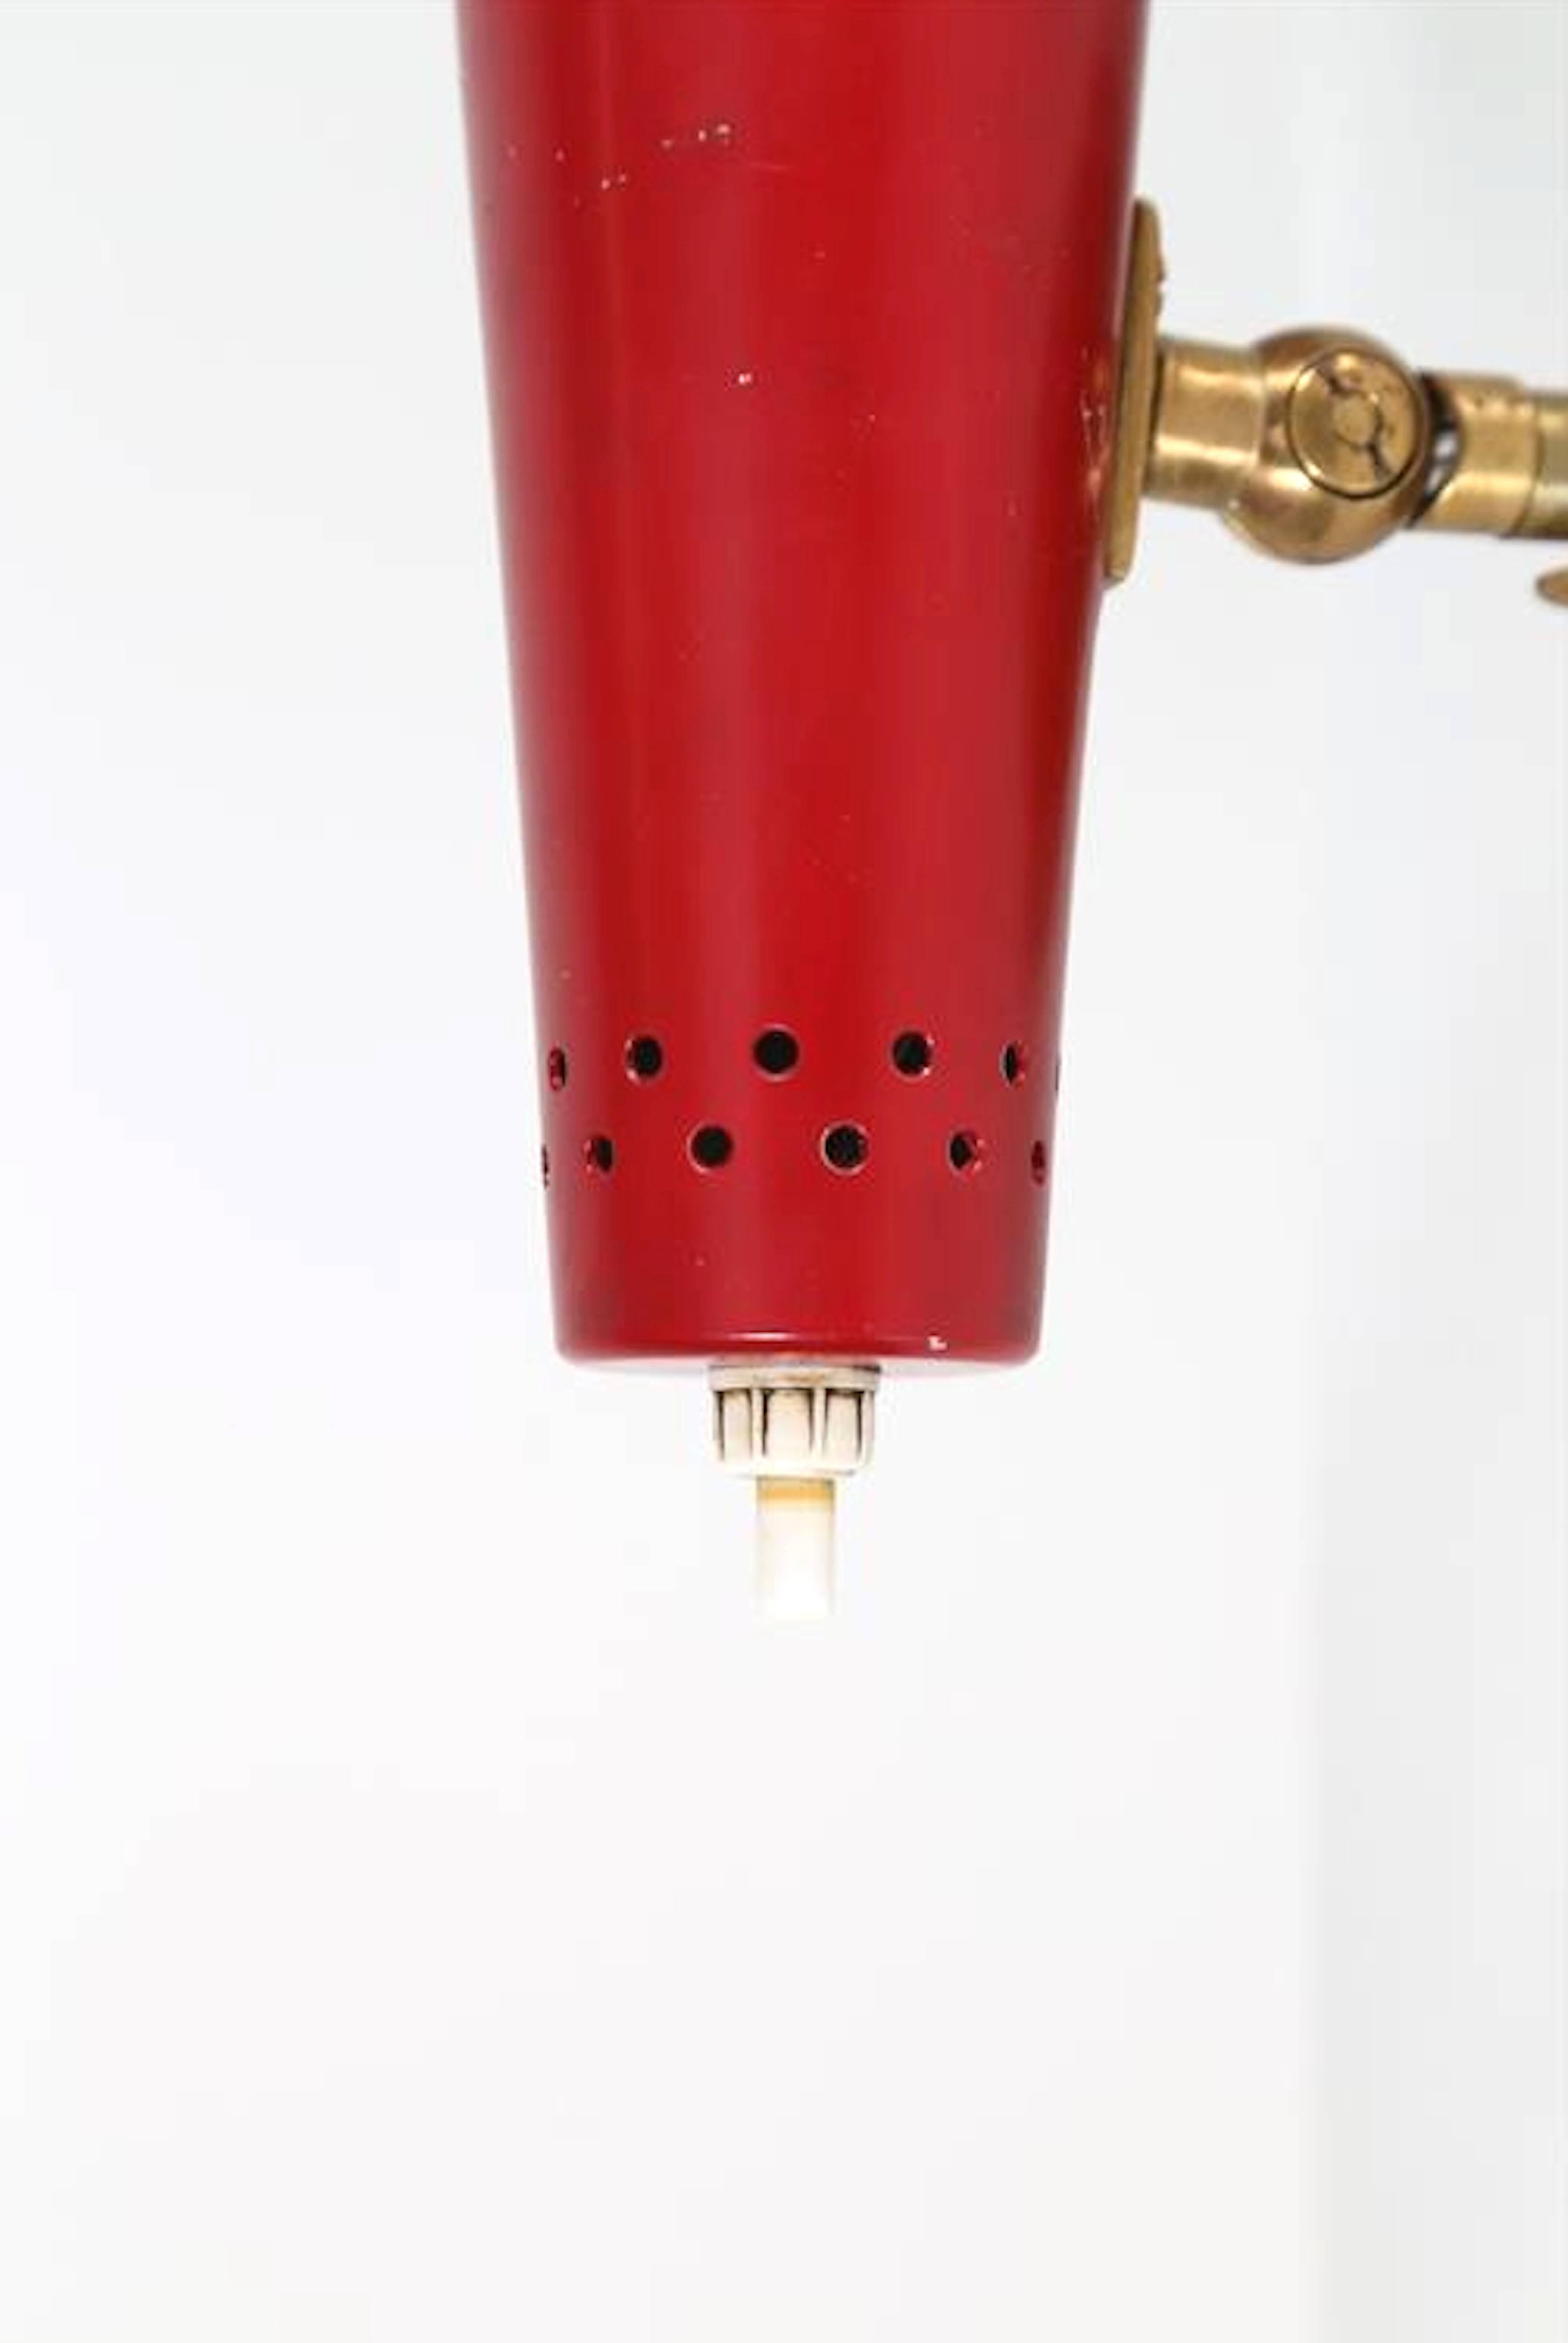 Quatre appliques rouges conçues par Gino Sarfatti et éditées par Arteluce en 1955, avec des réflecteurs réglables en aluminium laqué de couleur. Bras, pivot et base en laiton poli.
Litt. 